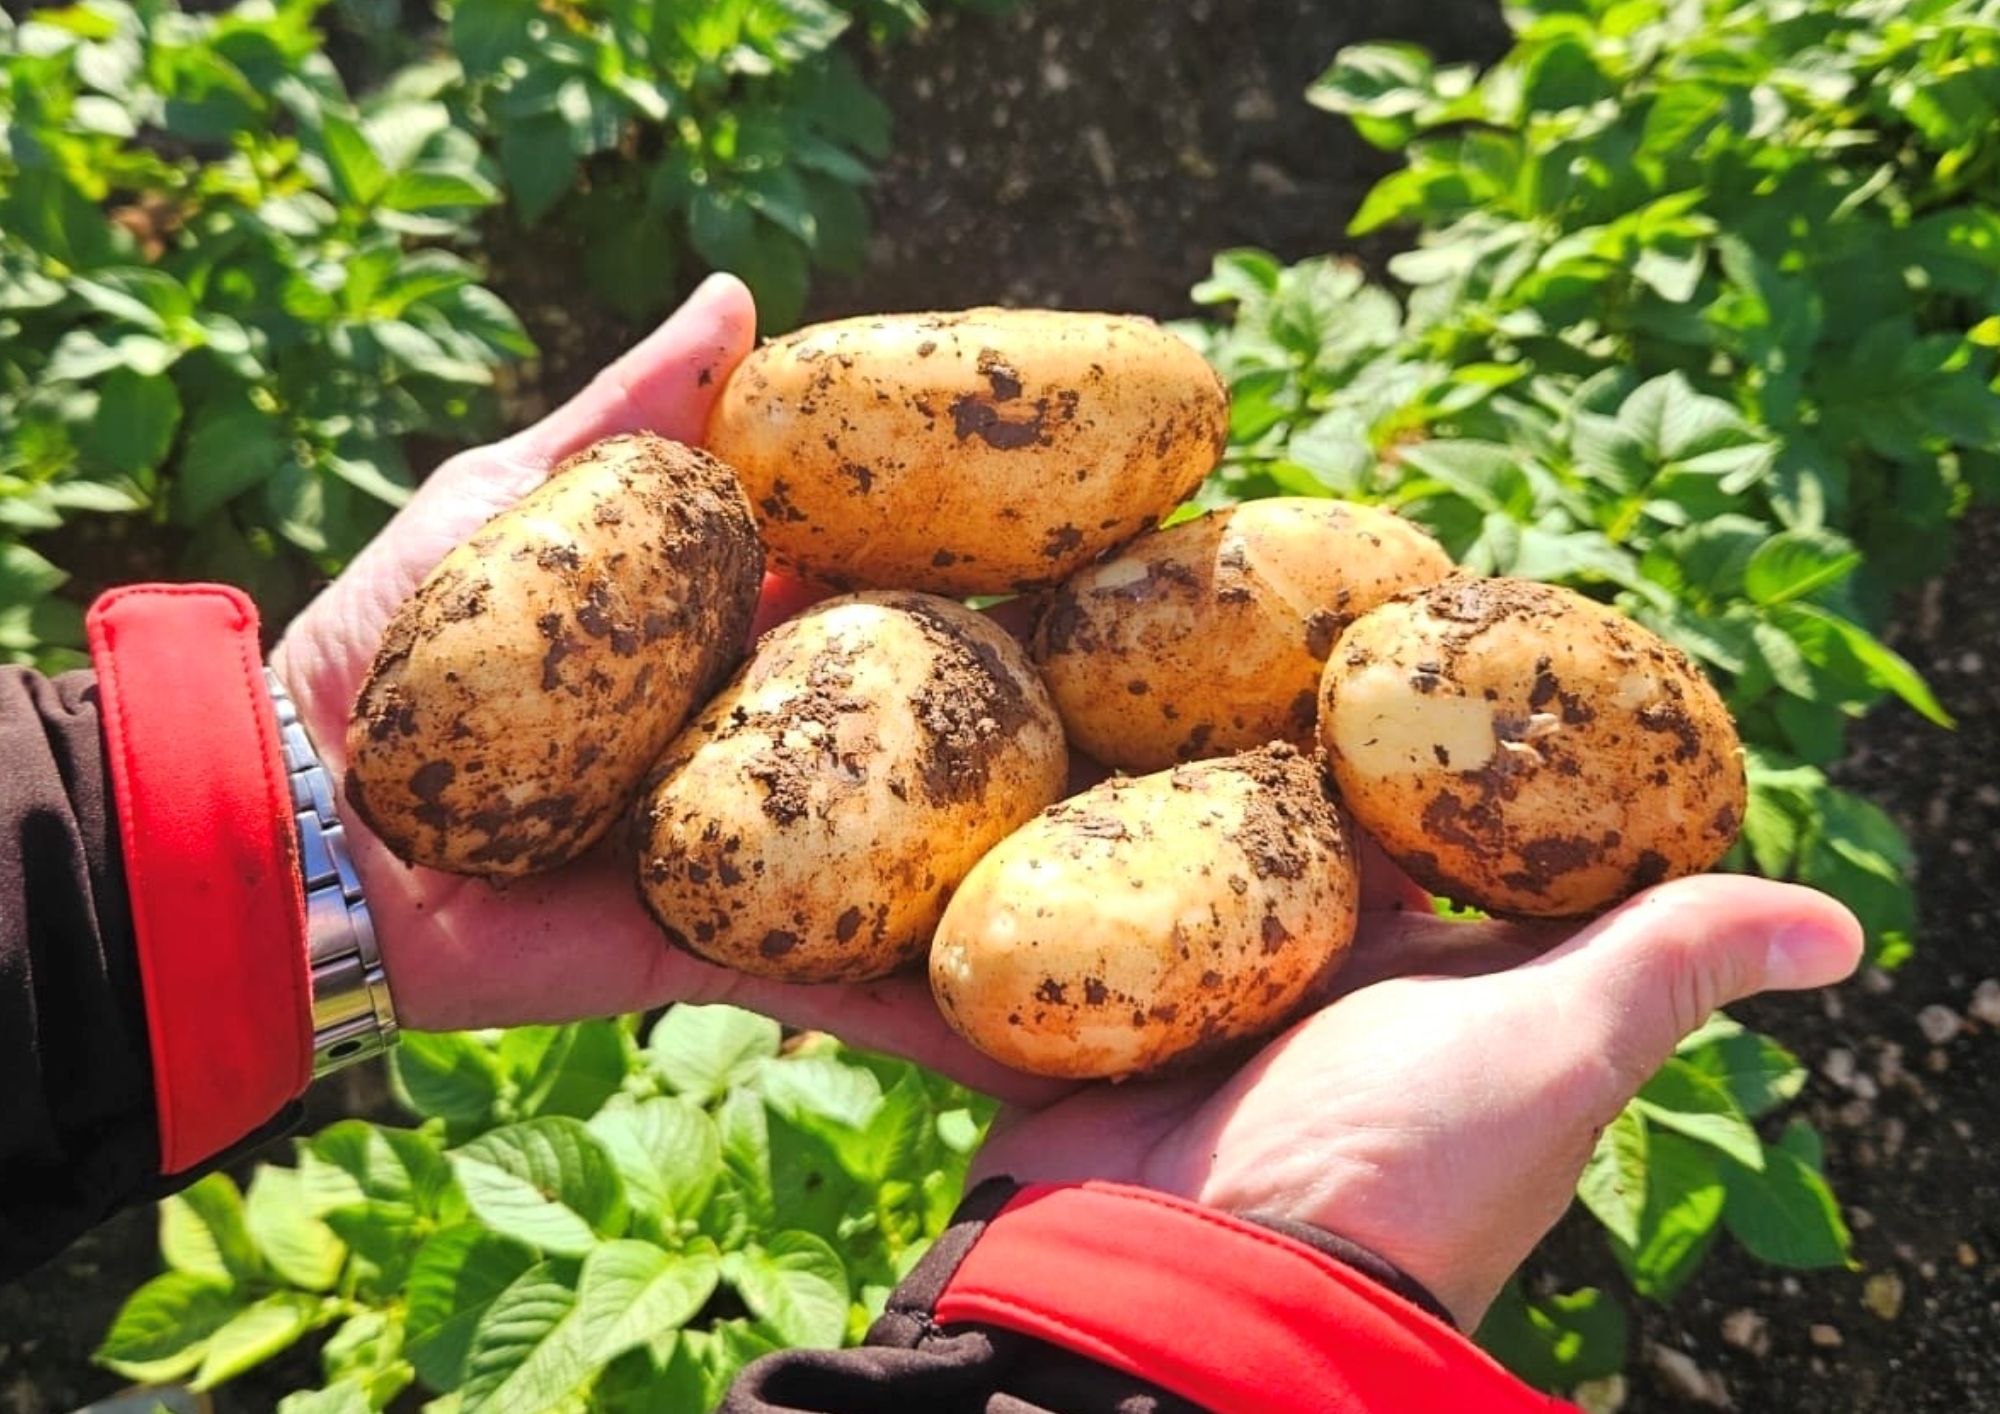 The new potato Sicilian supply chain